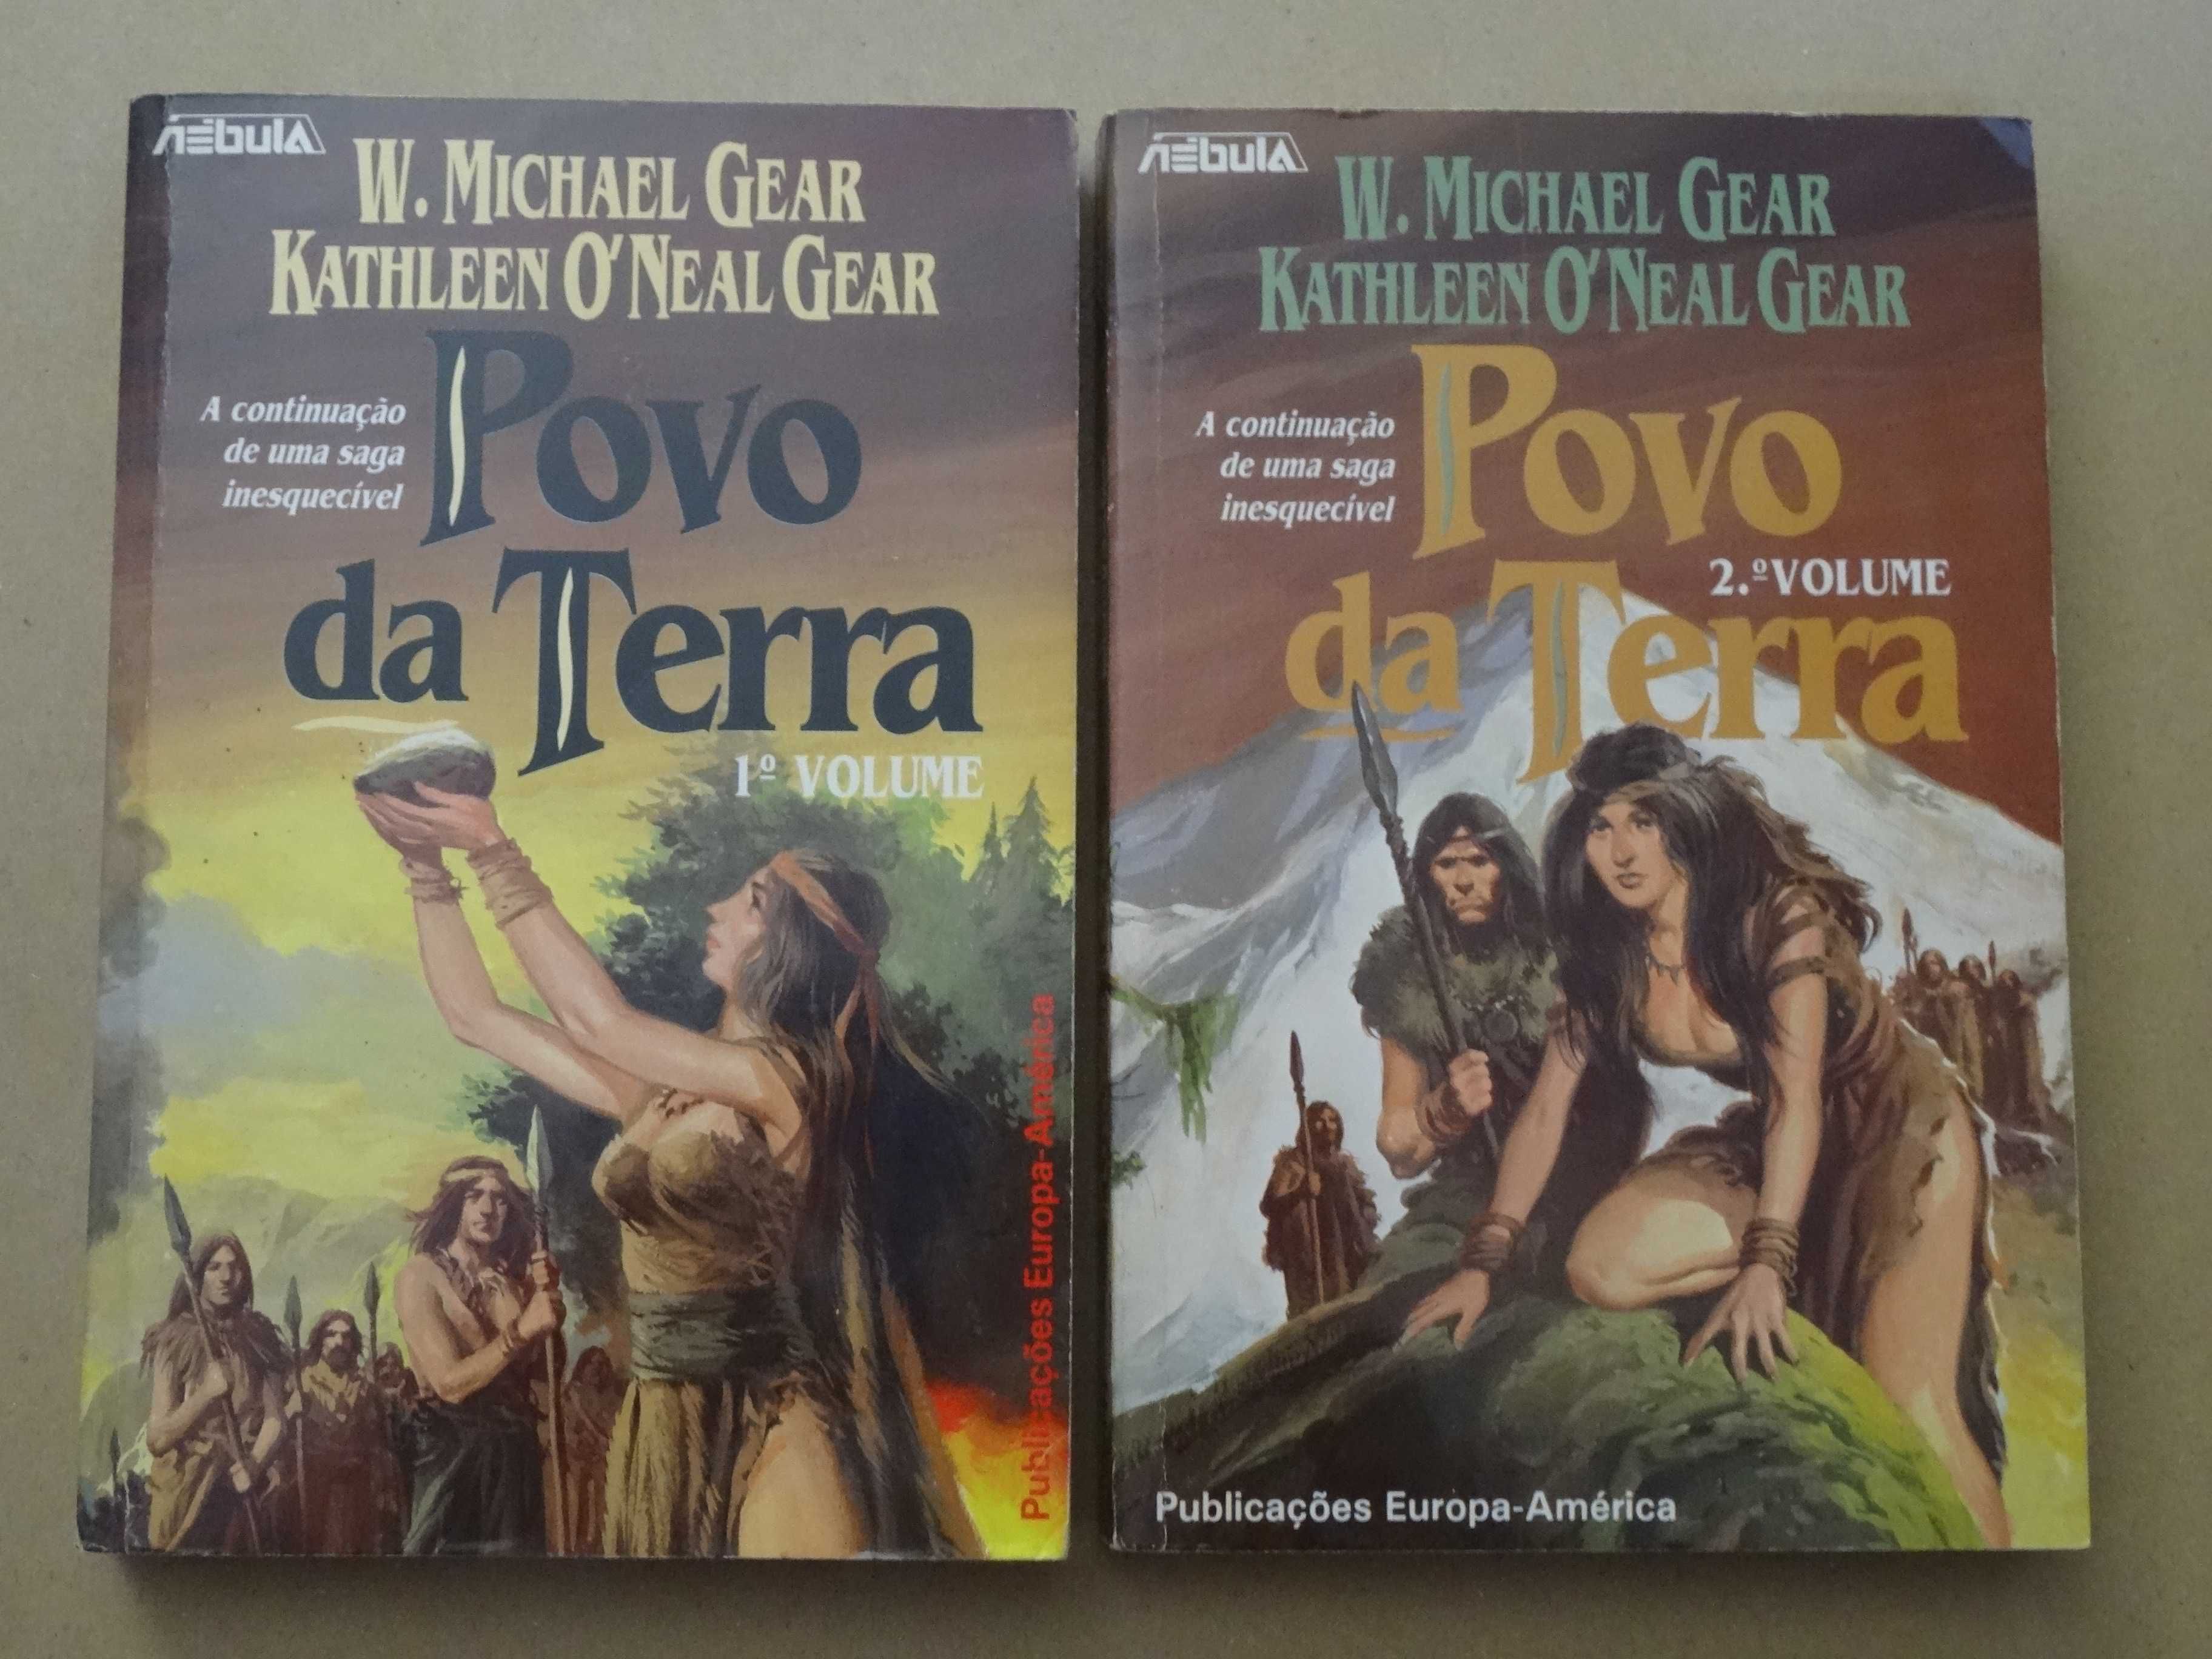 Povo da Terra de W. Michael Gear e Kathleen O' Neal Gear - 2 Volumes